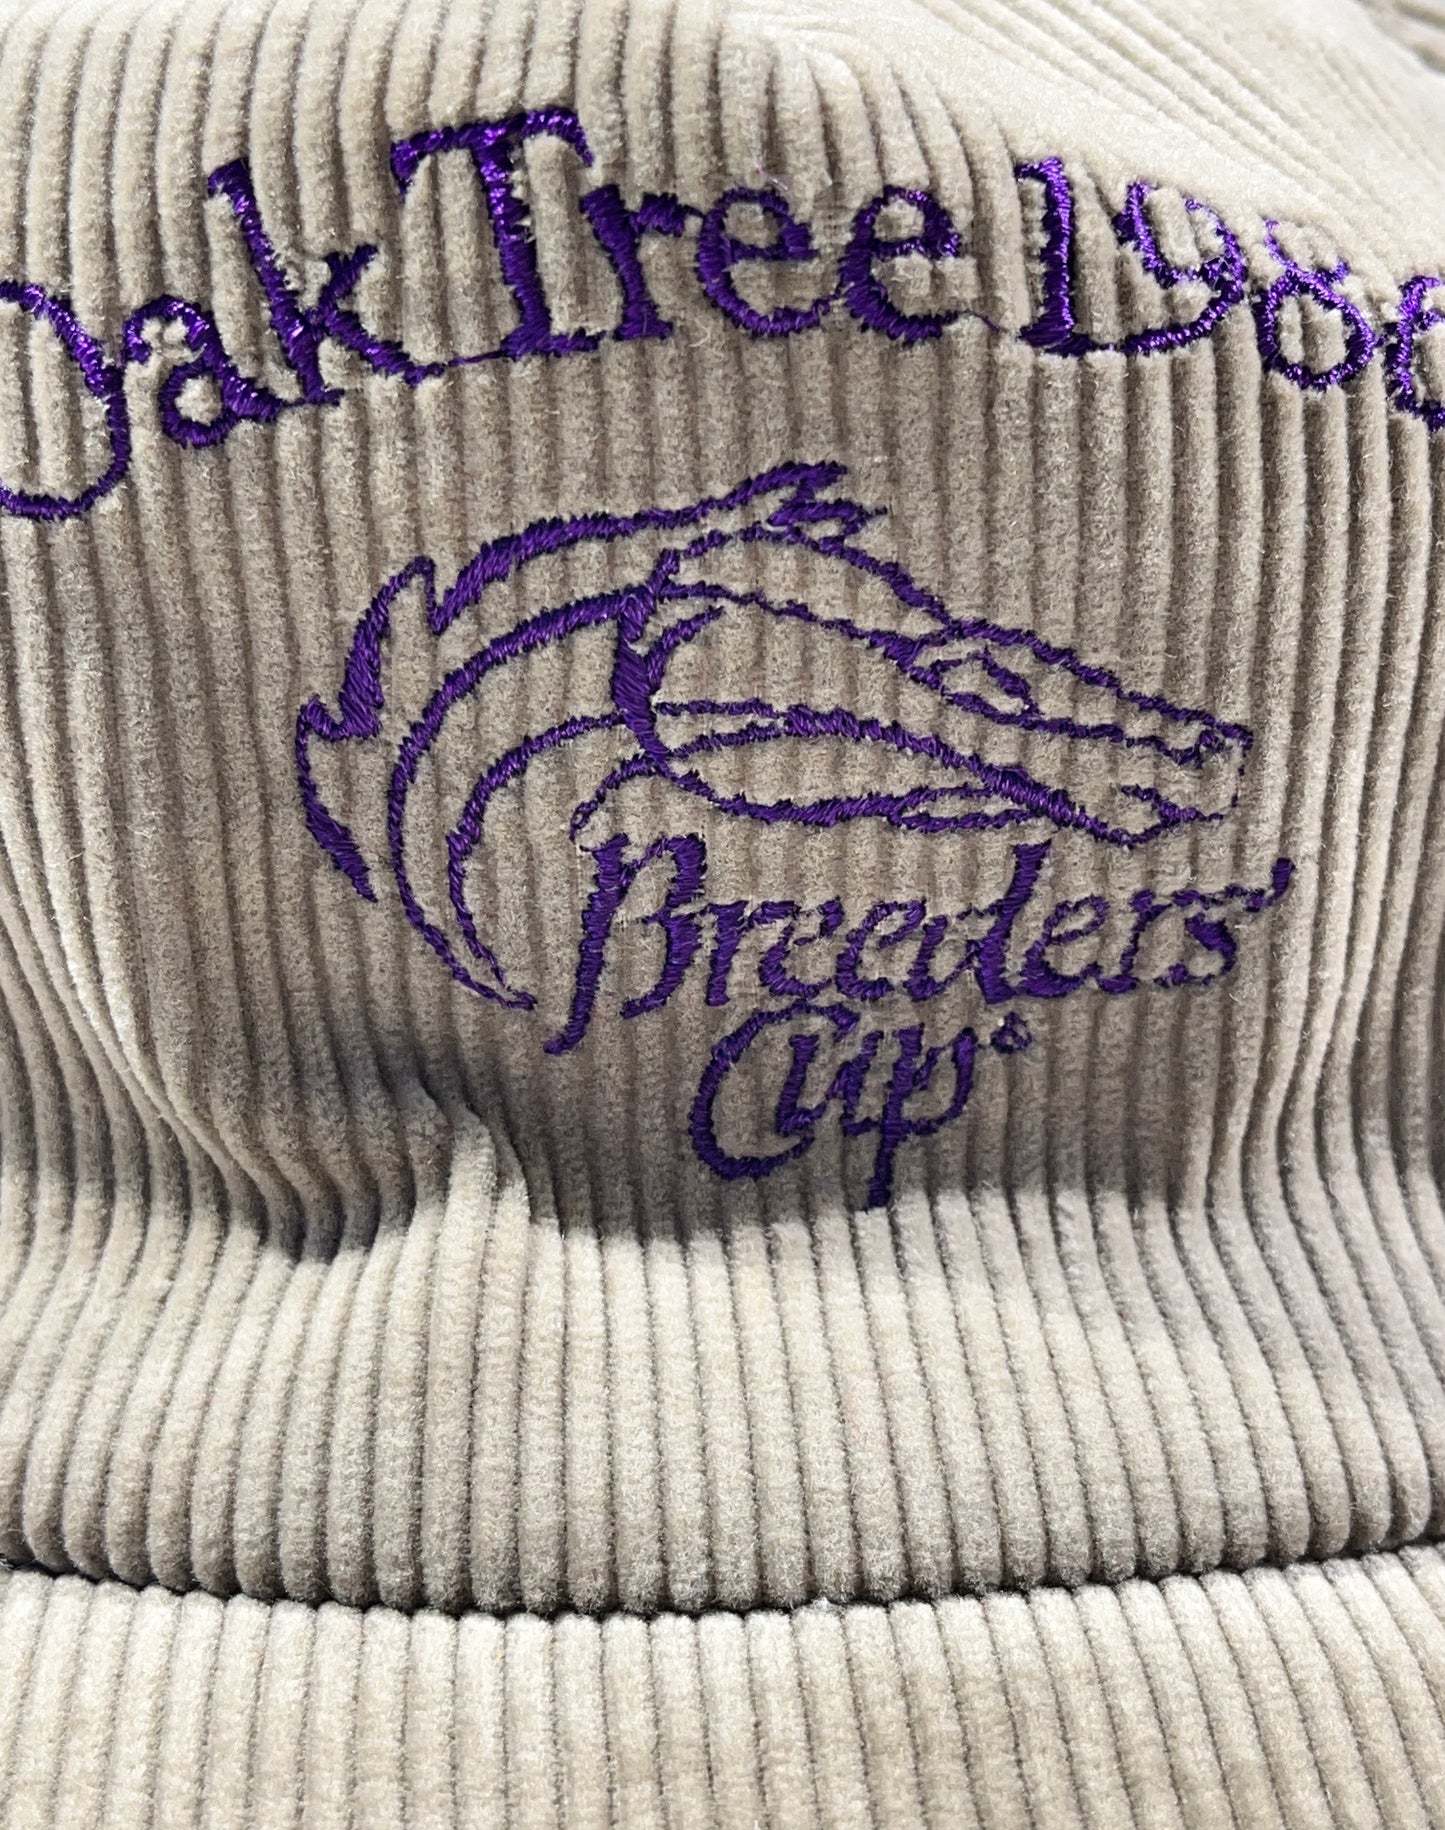 Vintage Oak Tree Breeders Cup 1986 Hat Corduroy Snapback